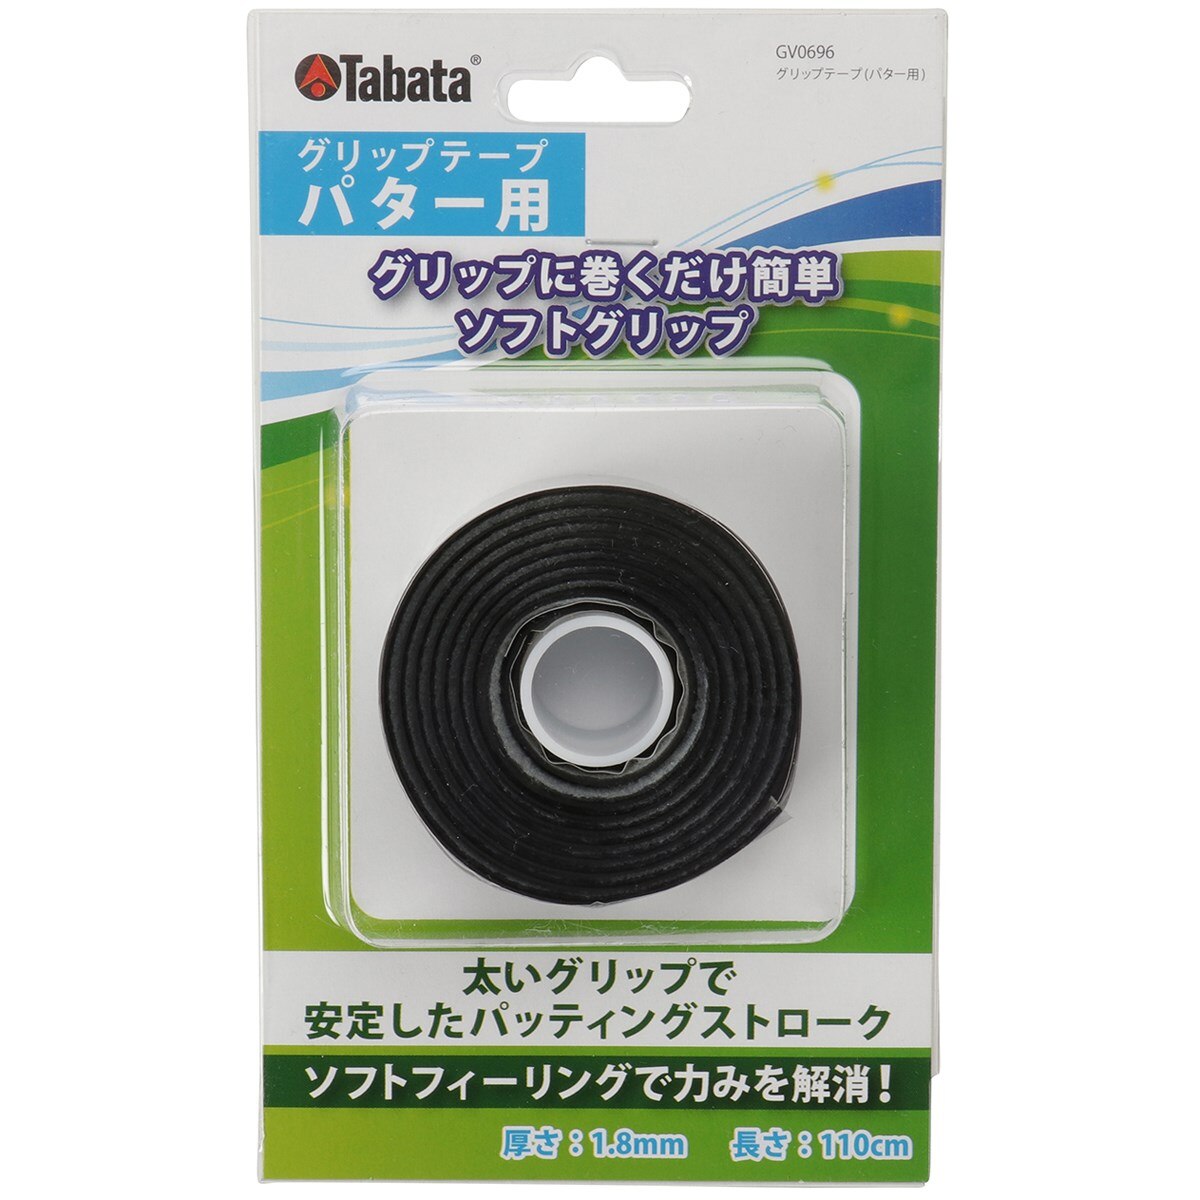 グリップテープ パター用GV-0696(リペアグッズ)|Tabata(タバタ)の通販 GDOゴルフショップ(0000158658)